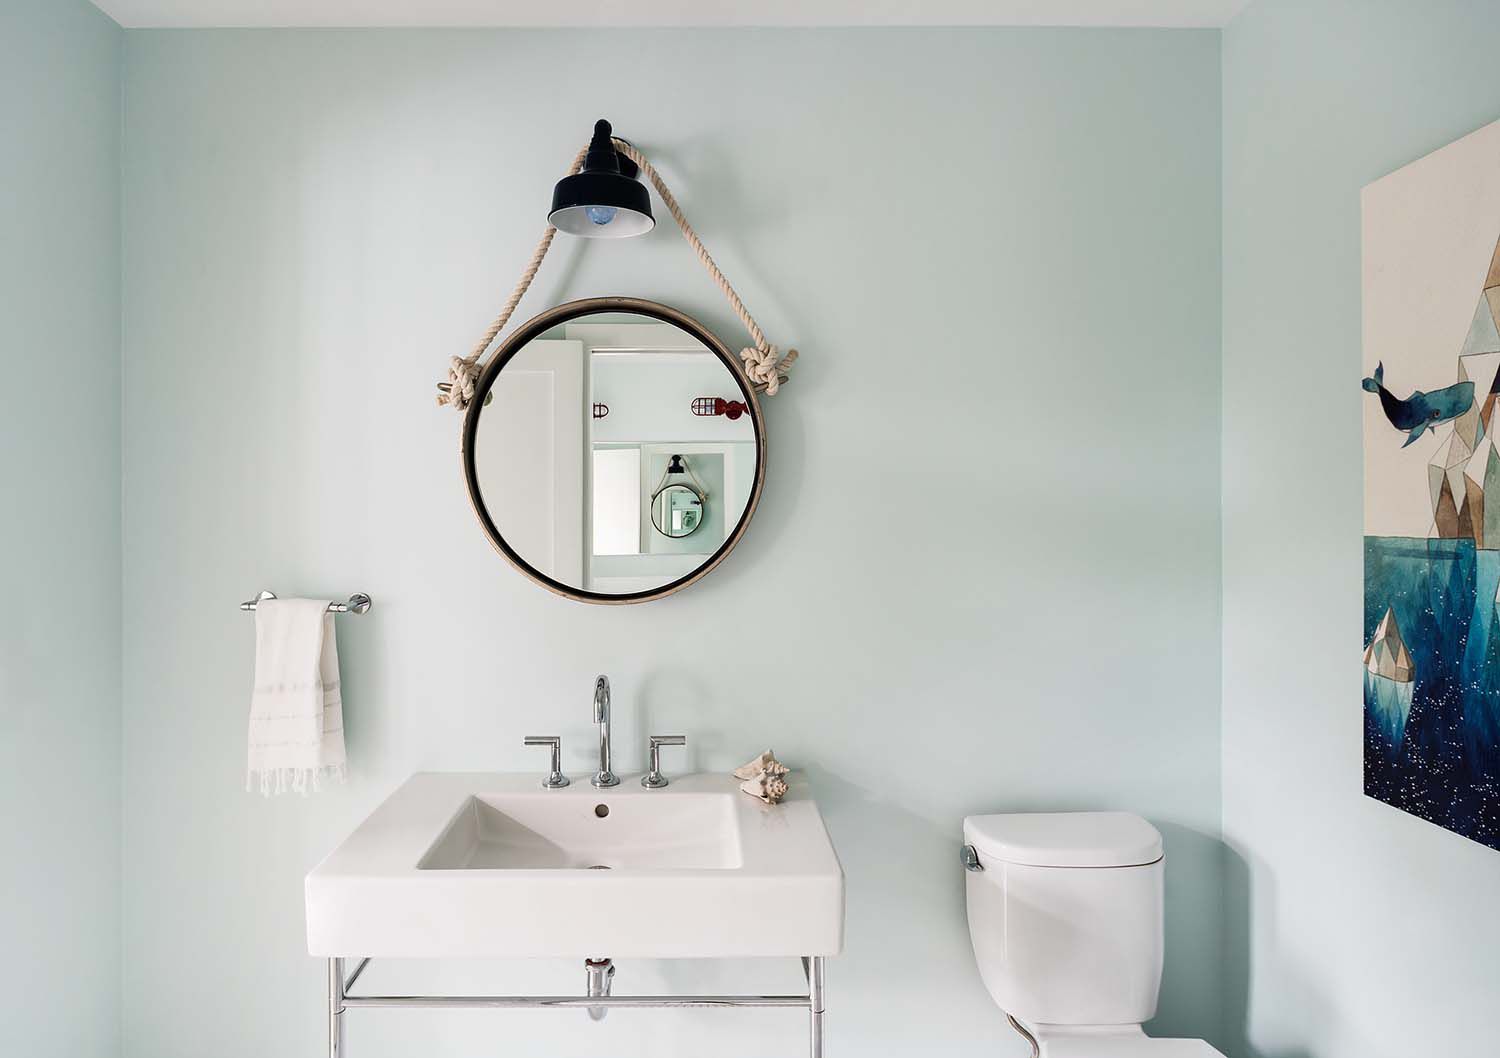 banheiro discreto de inspiração náutica com espelho redondo